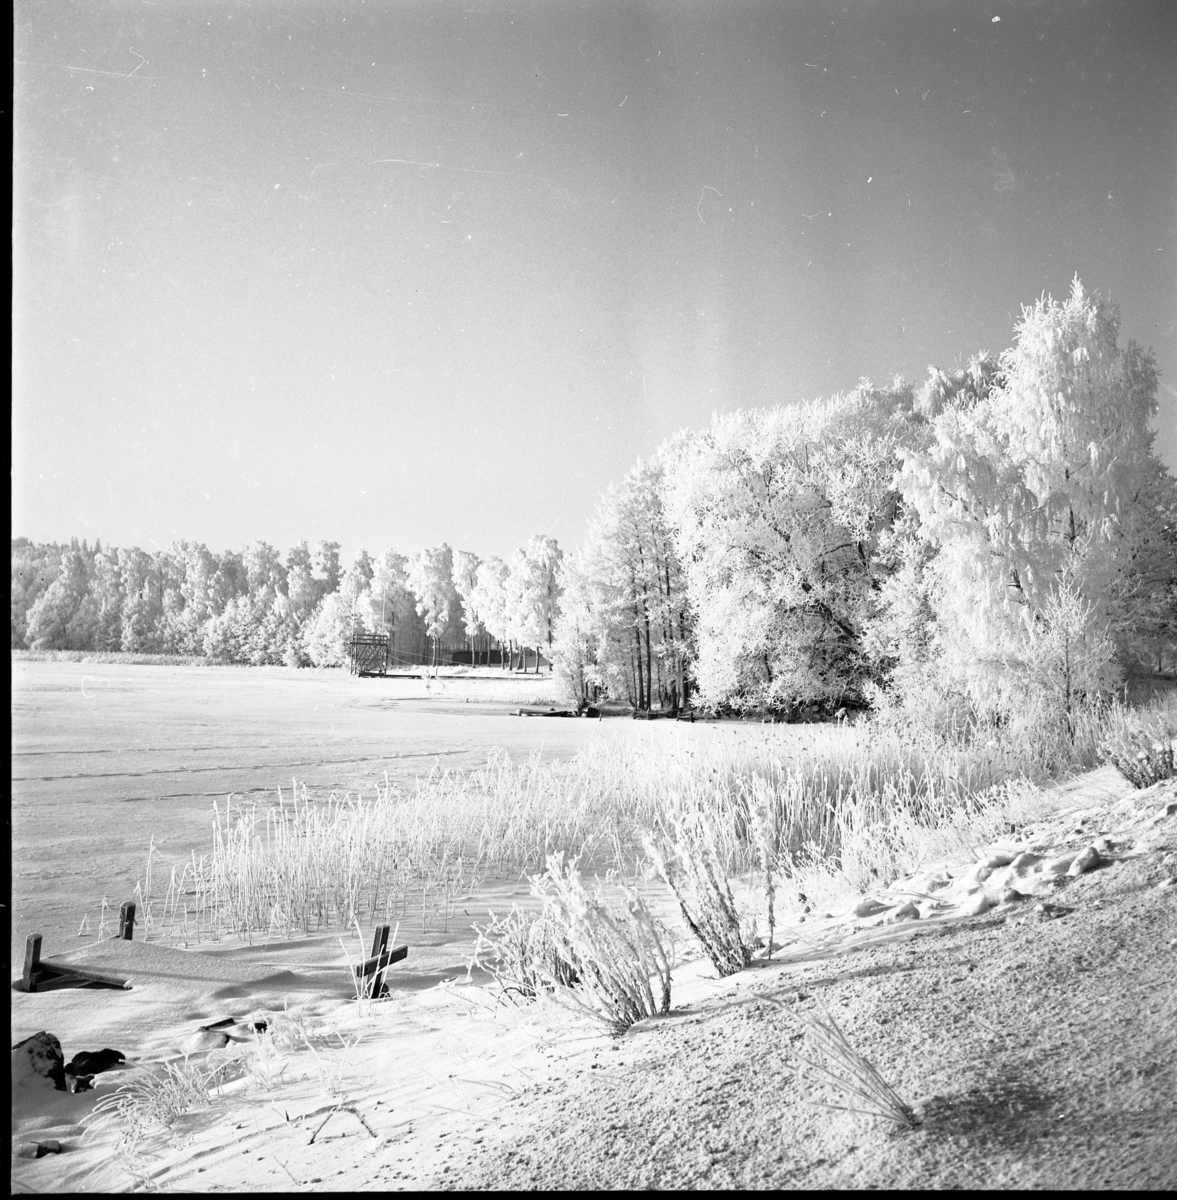 Vinterlandskap. En frusen sjö och snötäckt strand, möjligen sjön Ören vid Bunnström. Längst bort i bild skymtar en badstrand och ett hopptorn.